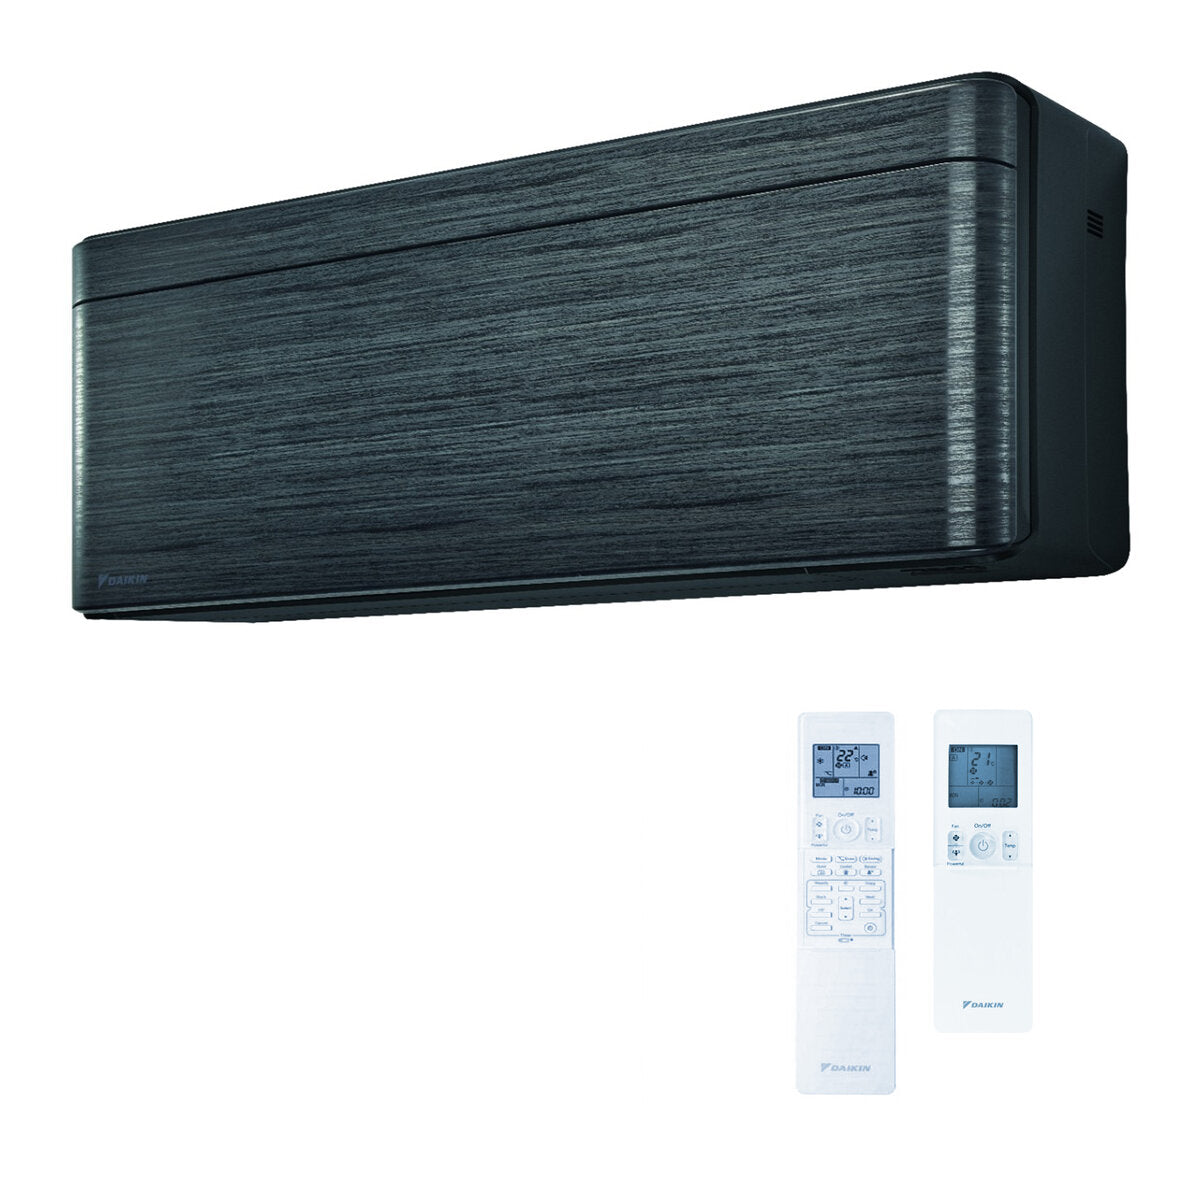 Daikin Stylish dual split air conditioner 9000 + 18000 BTU inverter A +++ wifi outdoor unit 5.0 kW